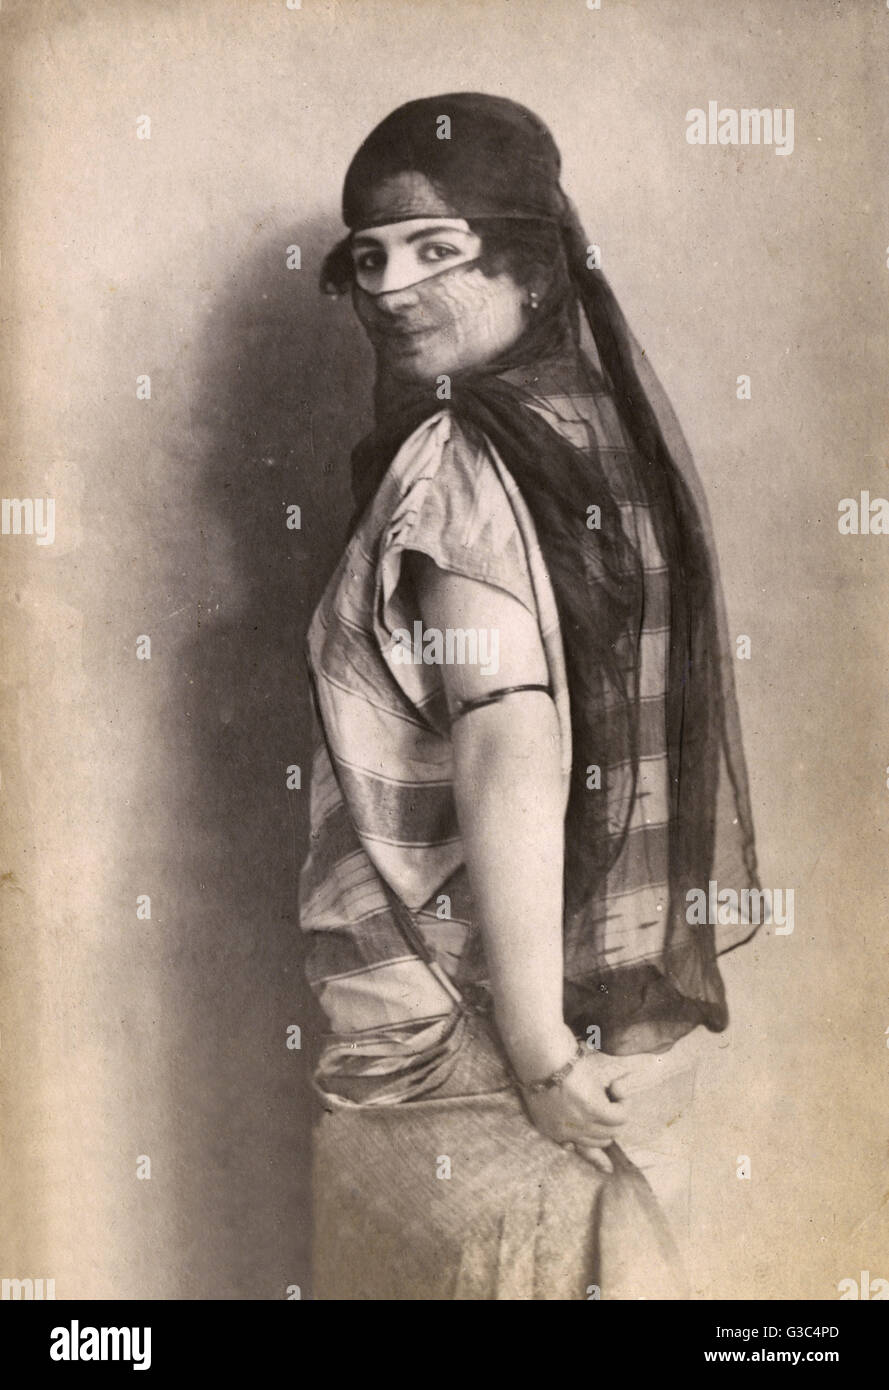 Velata donna turca che gira con un coy sguardo verso il fotografo. Data: 1920s Foto Stock